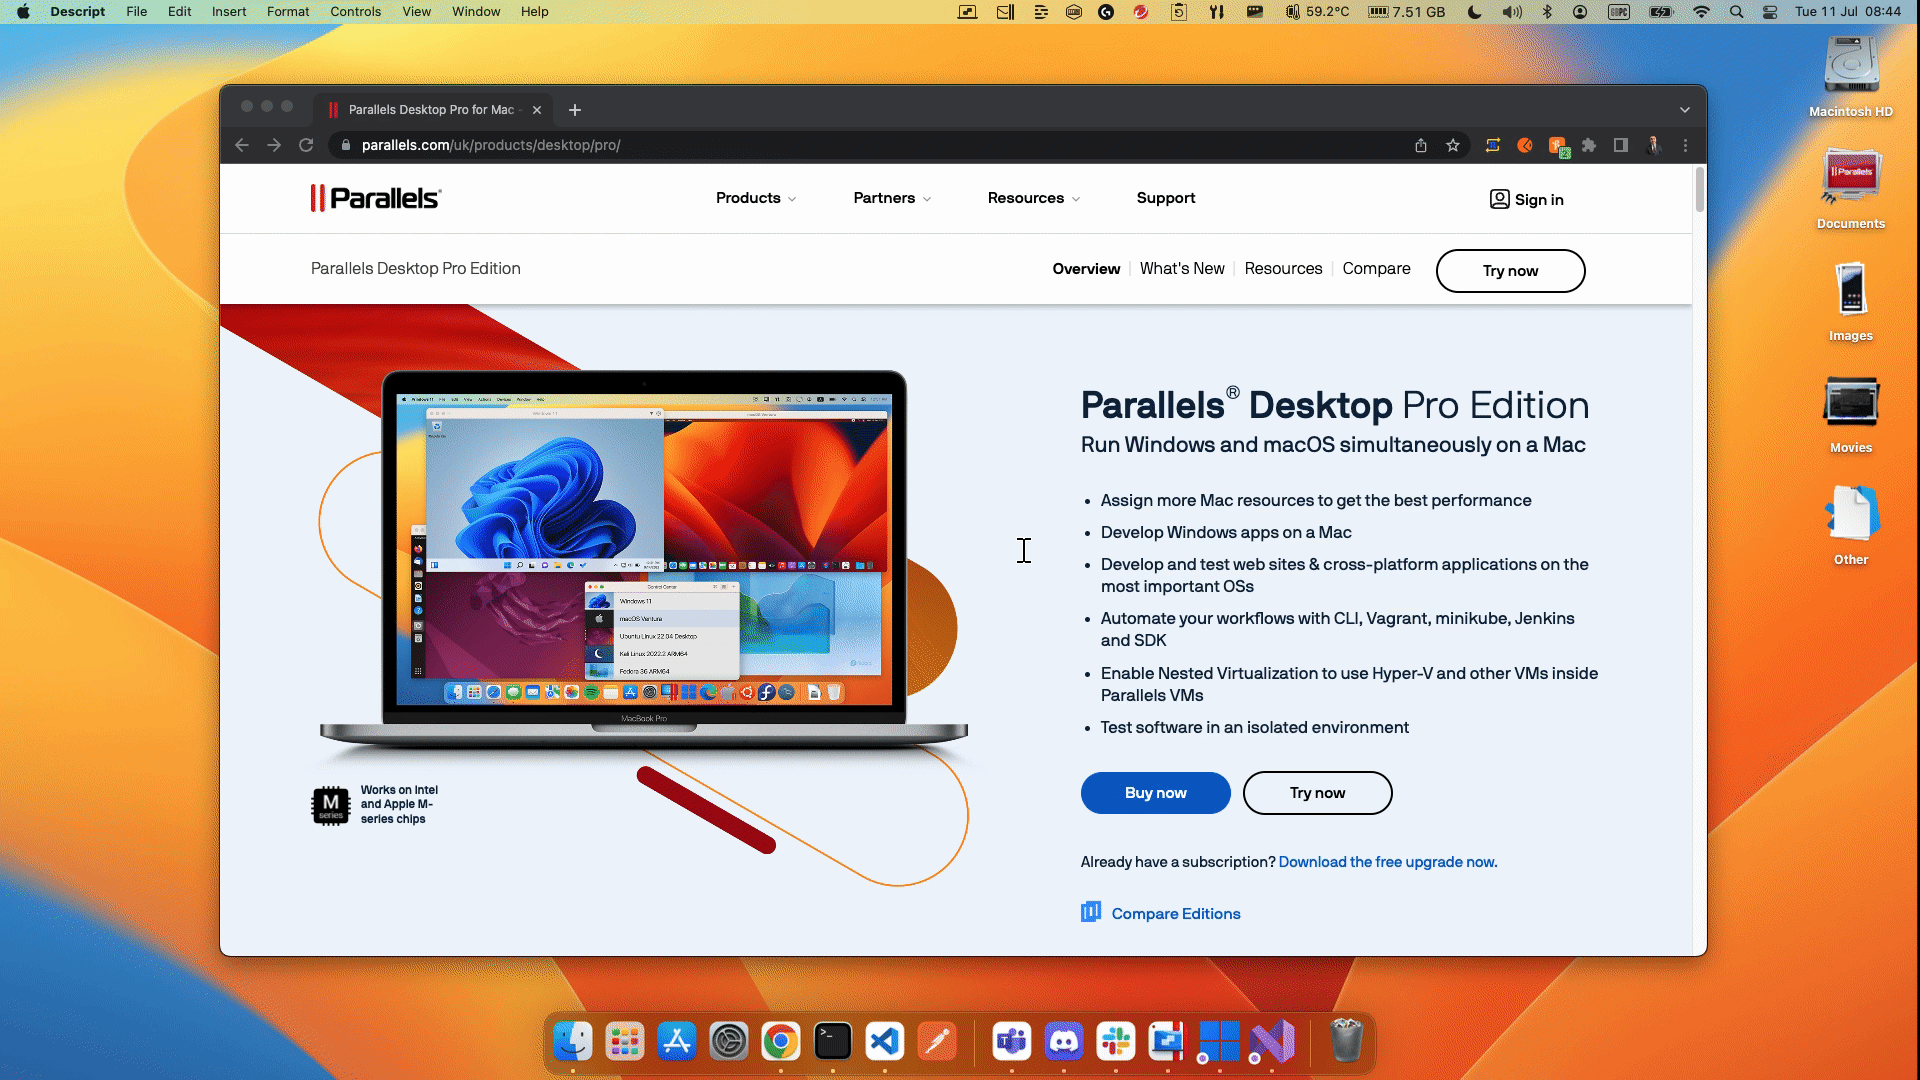 Voer Windows in volledige schermmodus naast macOS uit om je persoonlijke ruimte en overige werkruimten van elkaar te scheiden